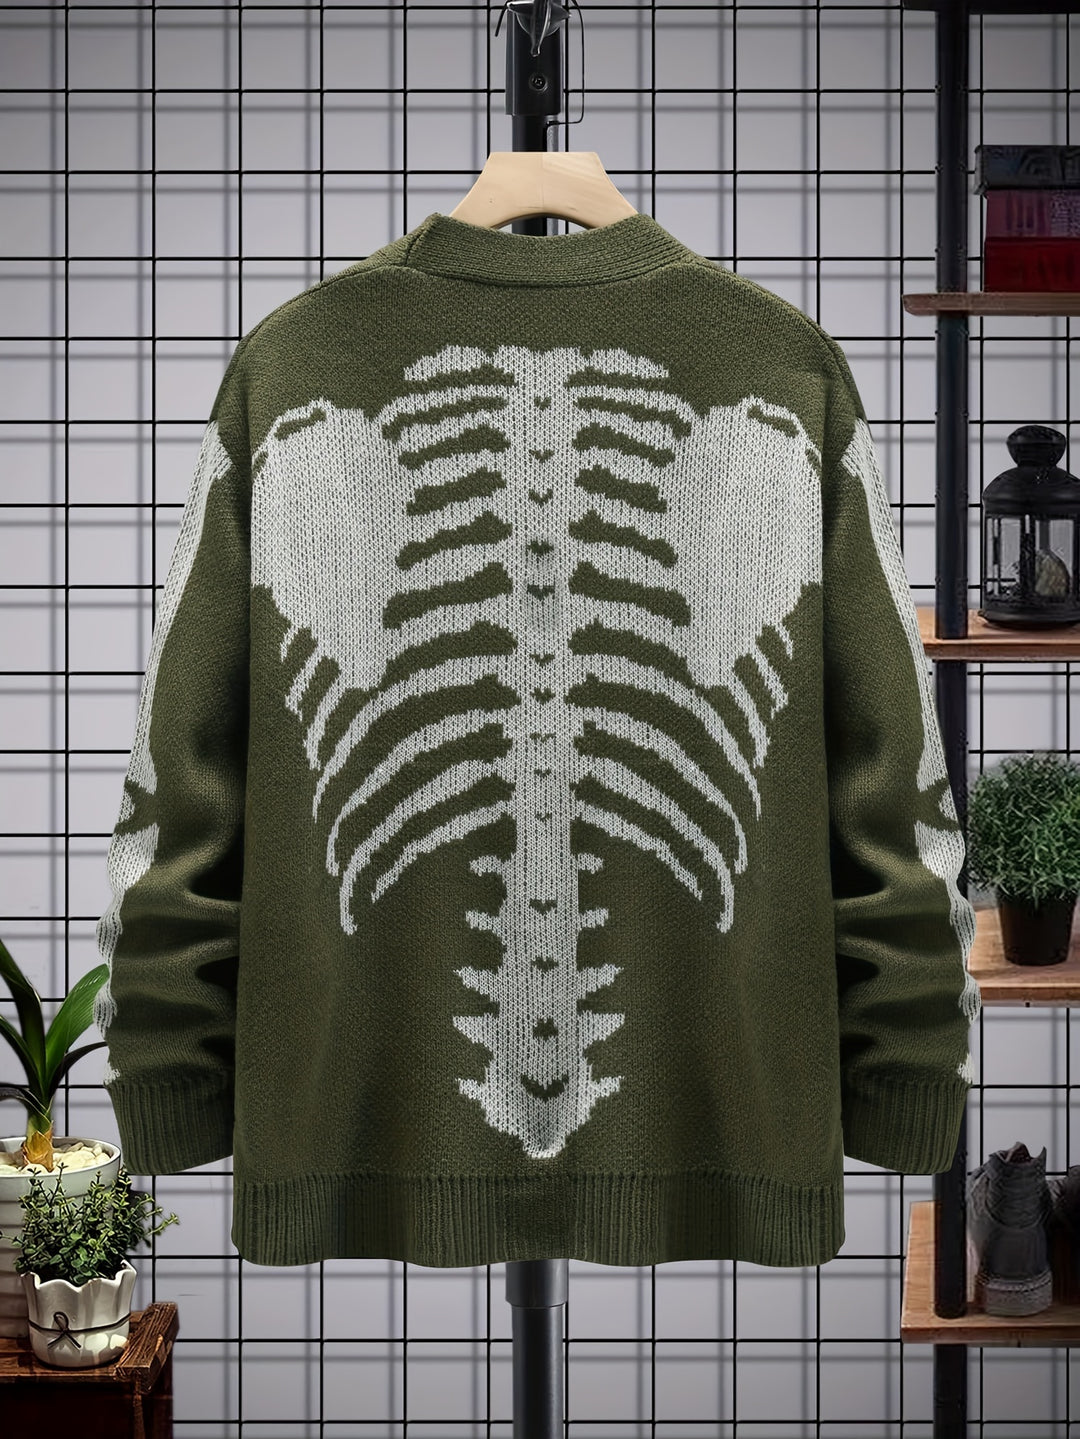 Skeleton Print Long Sleeve Cardigan